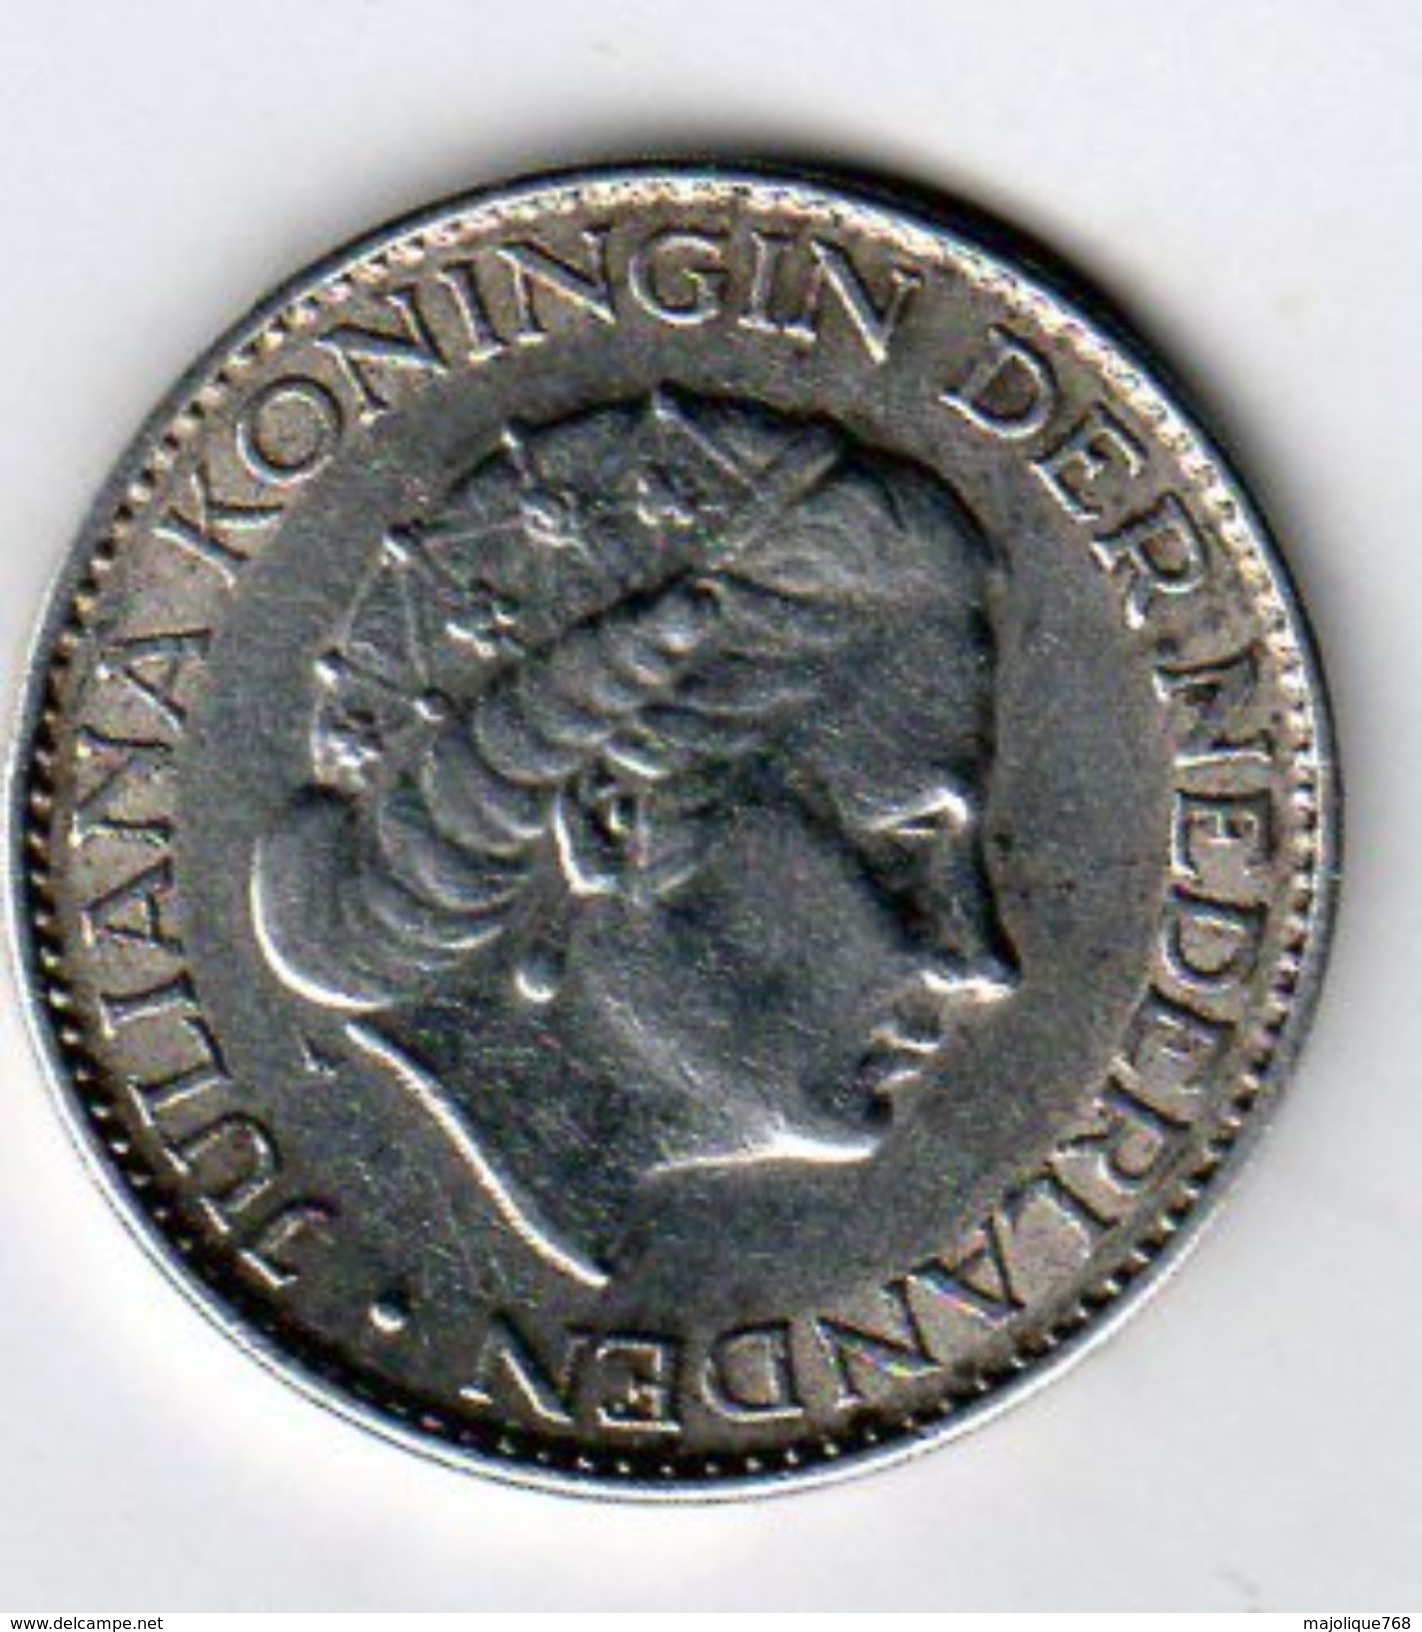 Pièce De Monnaie Du Pays-bas De 1 Gulden Argent 1963 En S U P - - Monnaies D'or Et D'argent